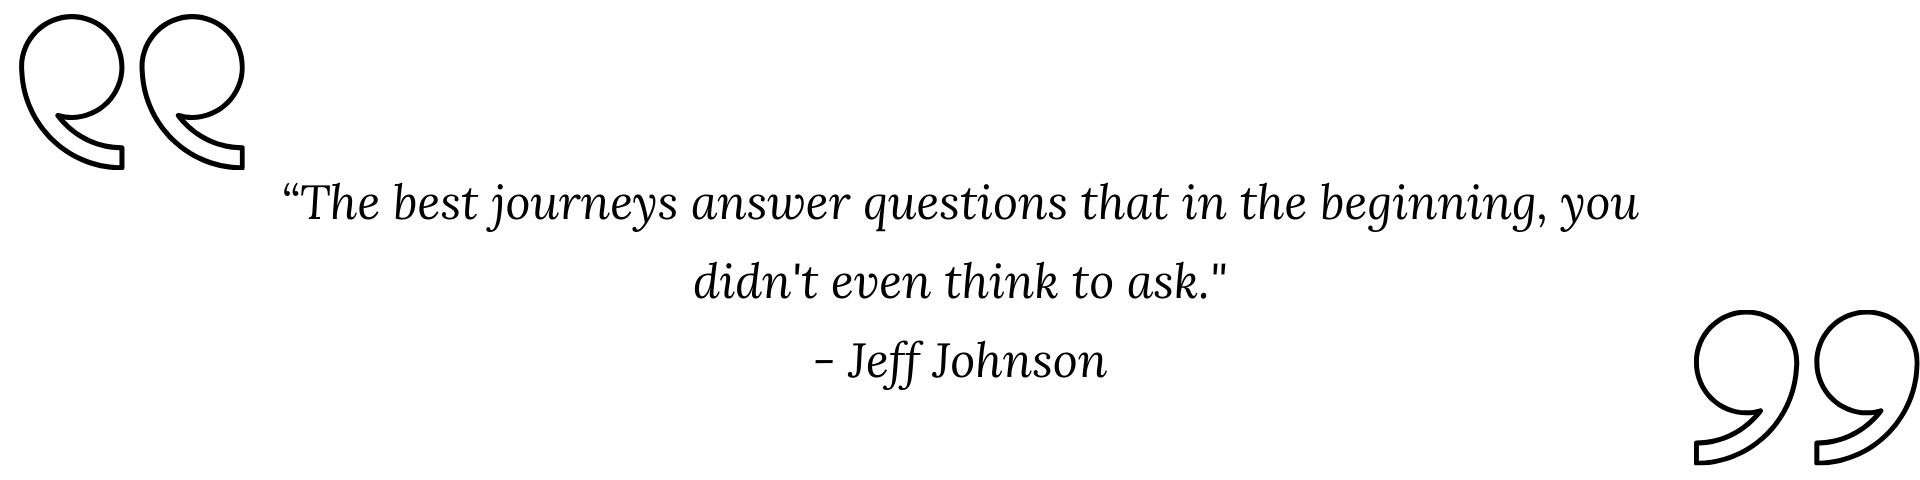 Jeff Johnson quote